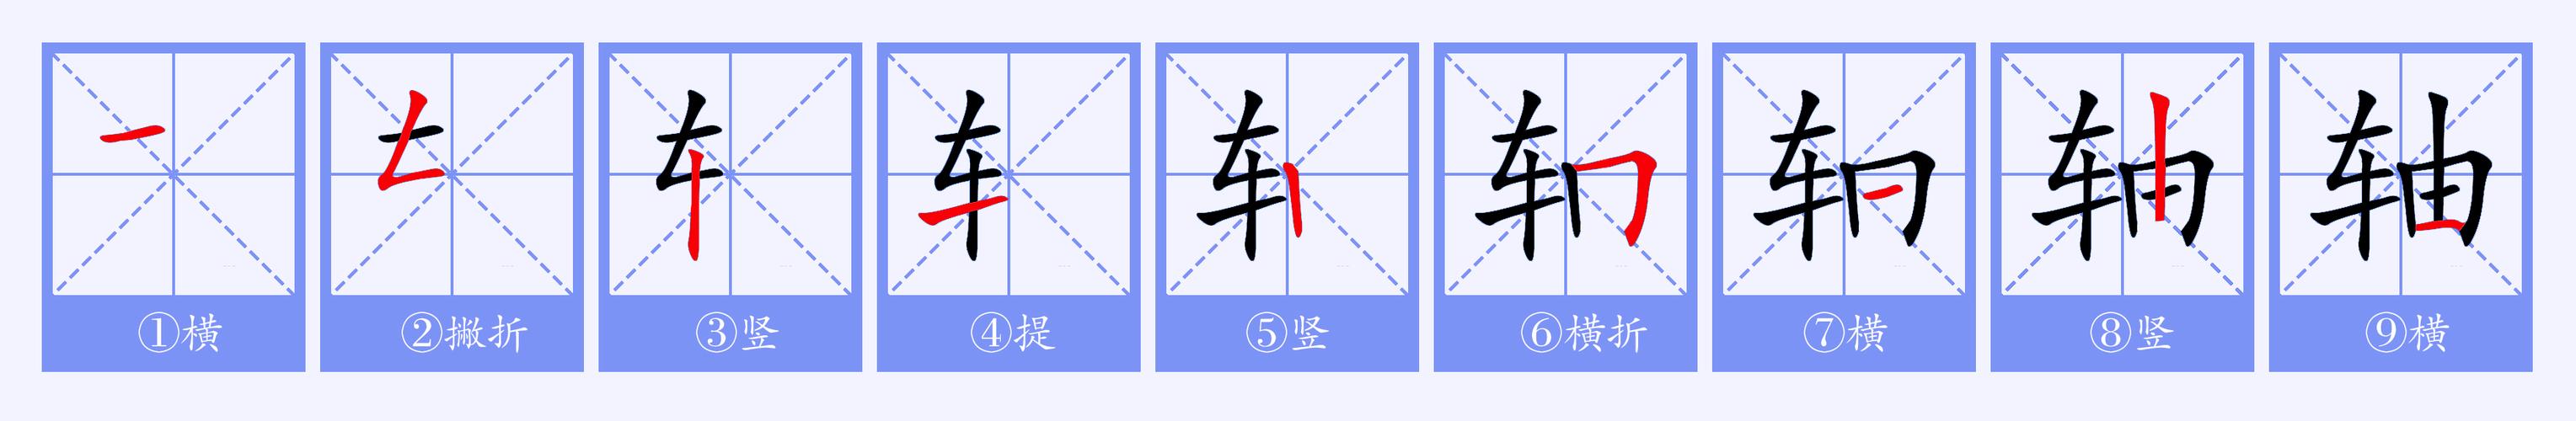  p>轴 (拼音:zhóu,zhòu)为汉语一级通用规范汉字(常用字).